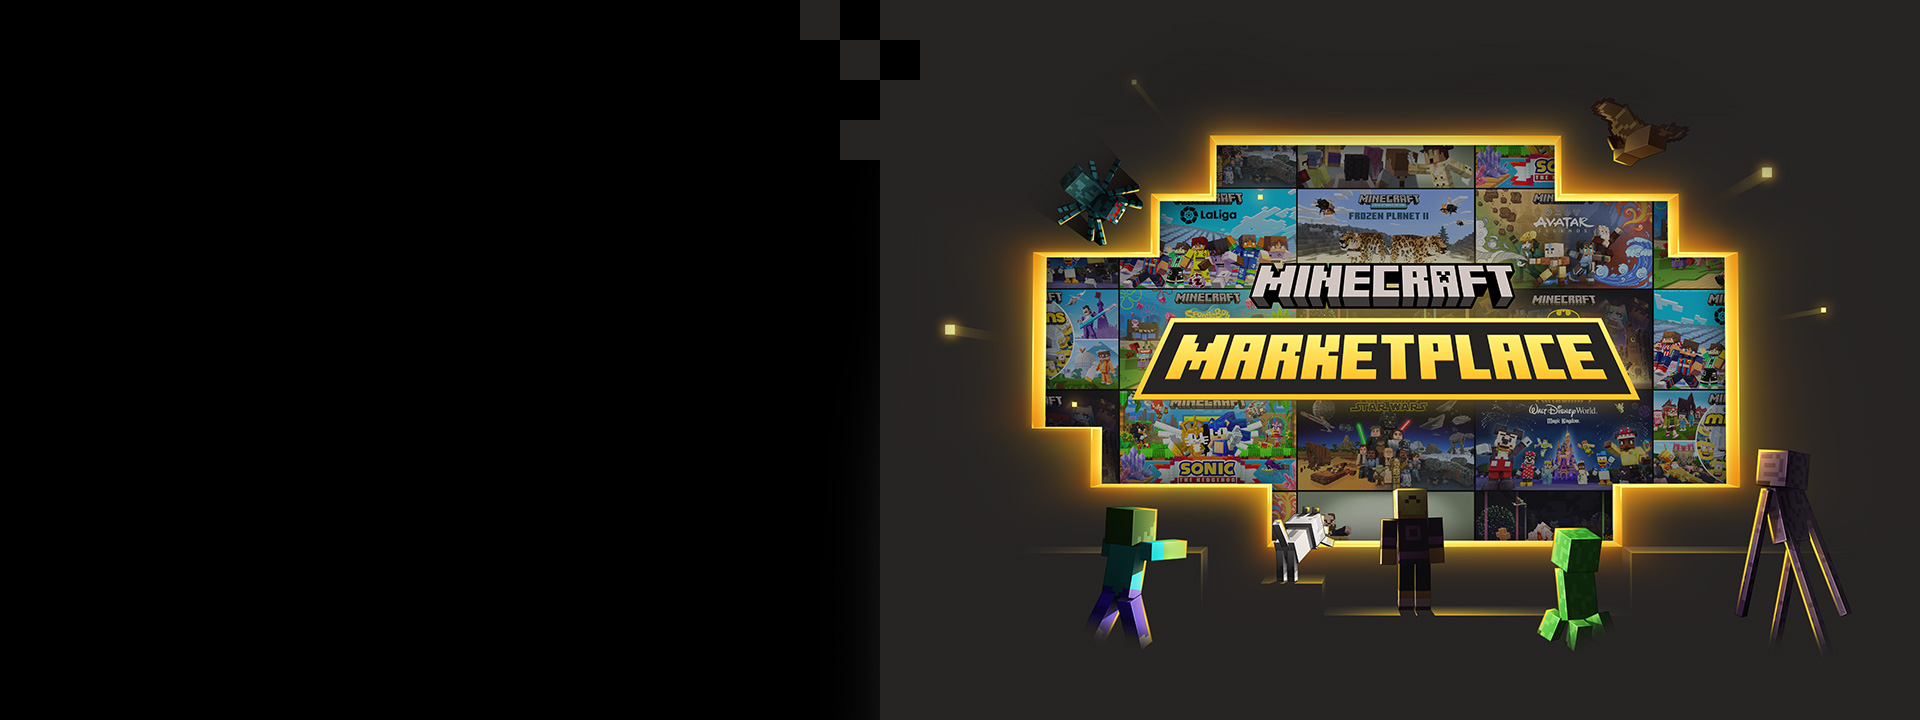 Minecraft Marketplace, verschiedene Mobs spähen durch ein Loch in den Minecraft Marketplace.